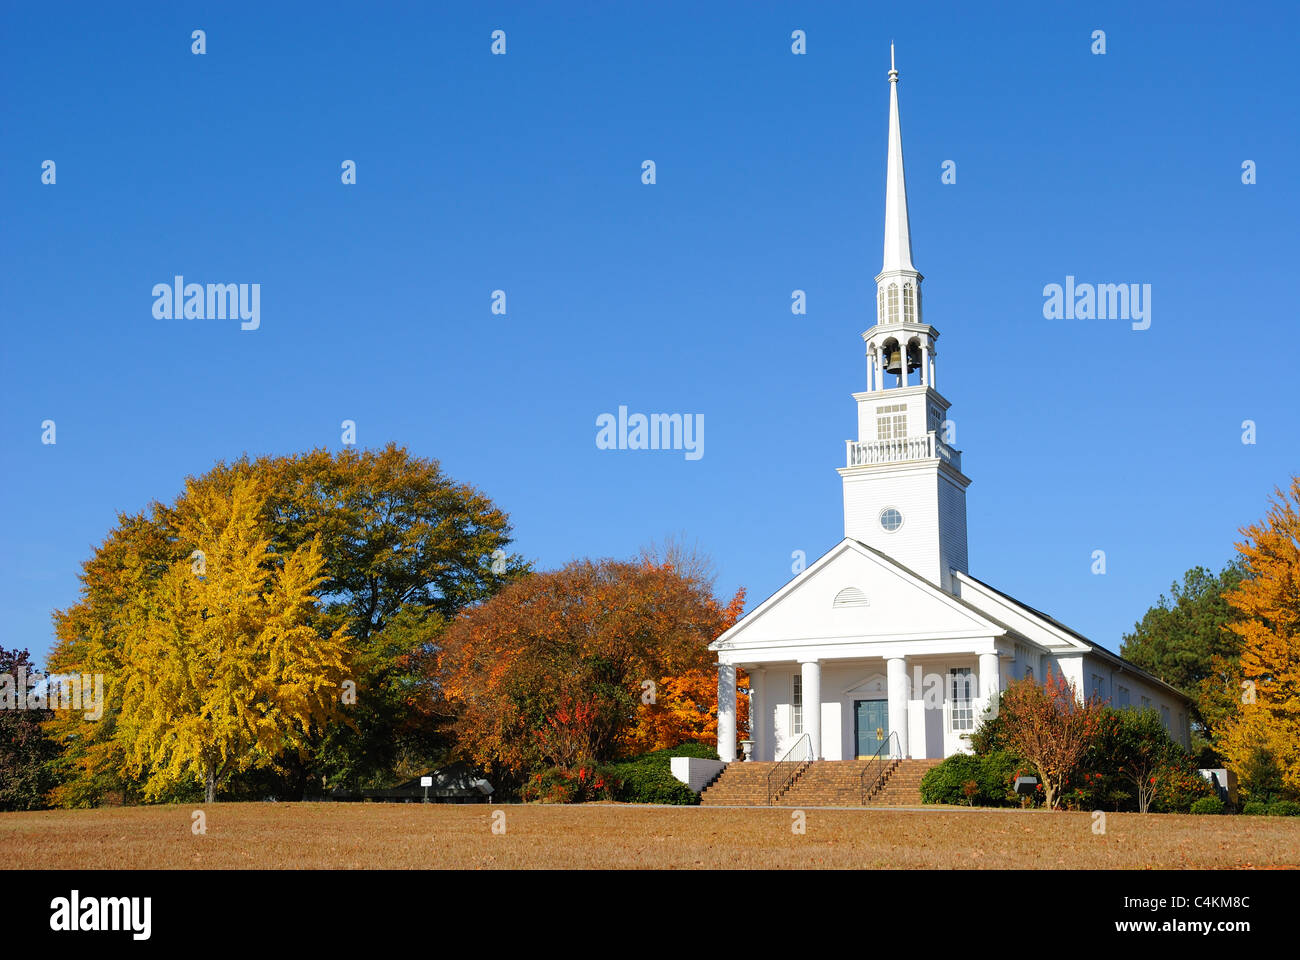 Eine südliche Baptist Church in ländlicher Umgebung. Stockfoto